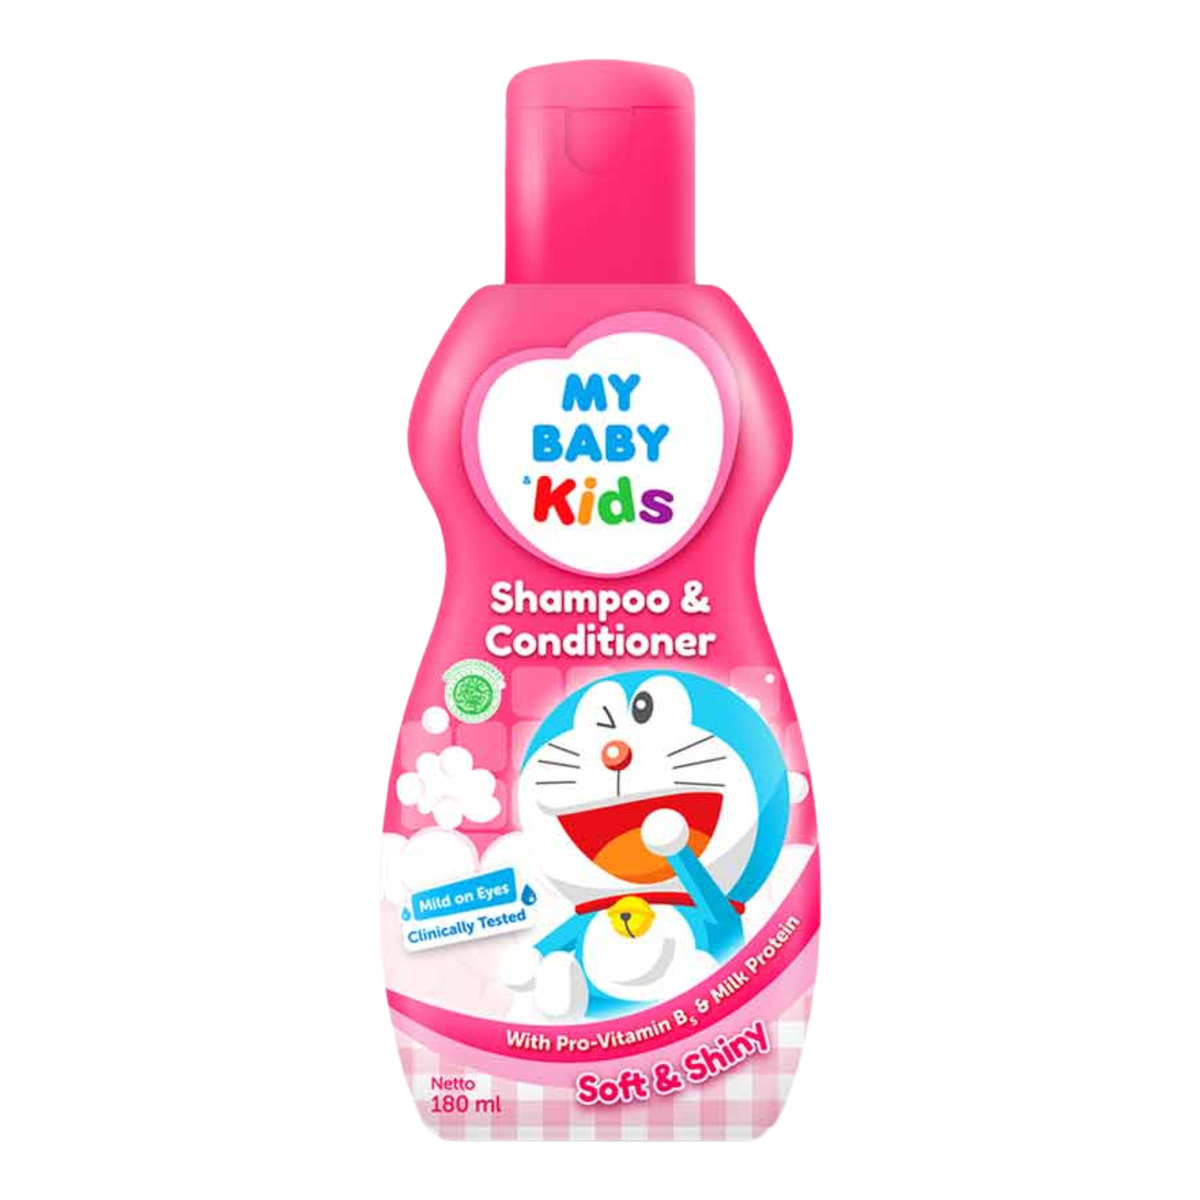 My Baby Kids Shampoo & Conditioner Soft & Shiny 180ml